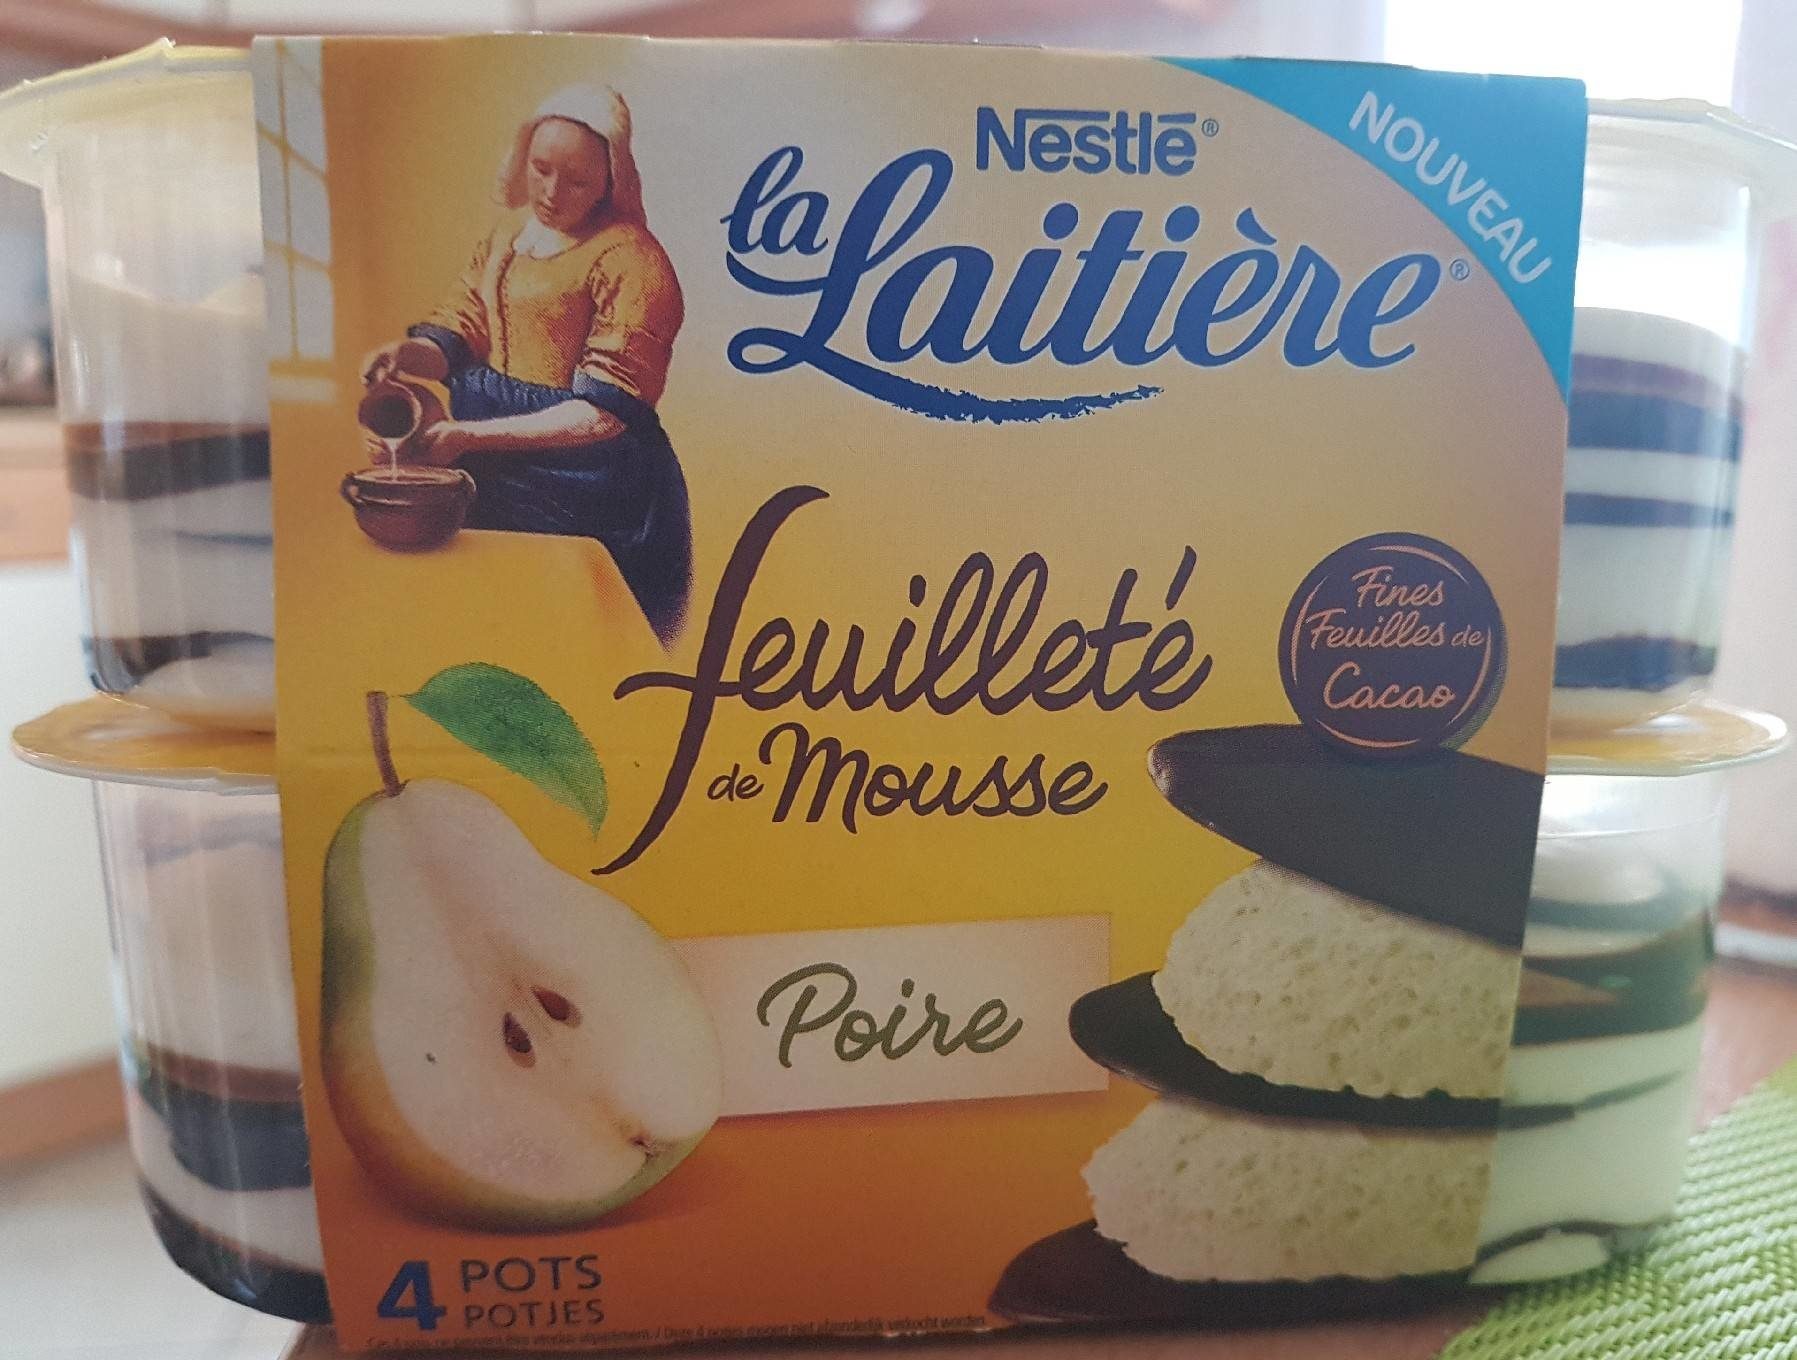 Feuilleté de Mousse Poire - Product - fr